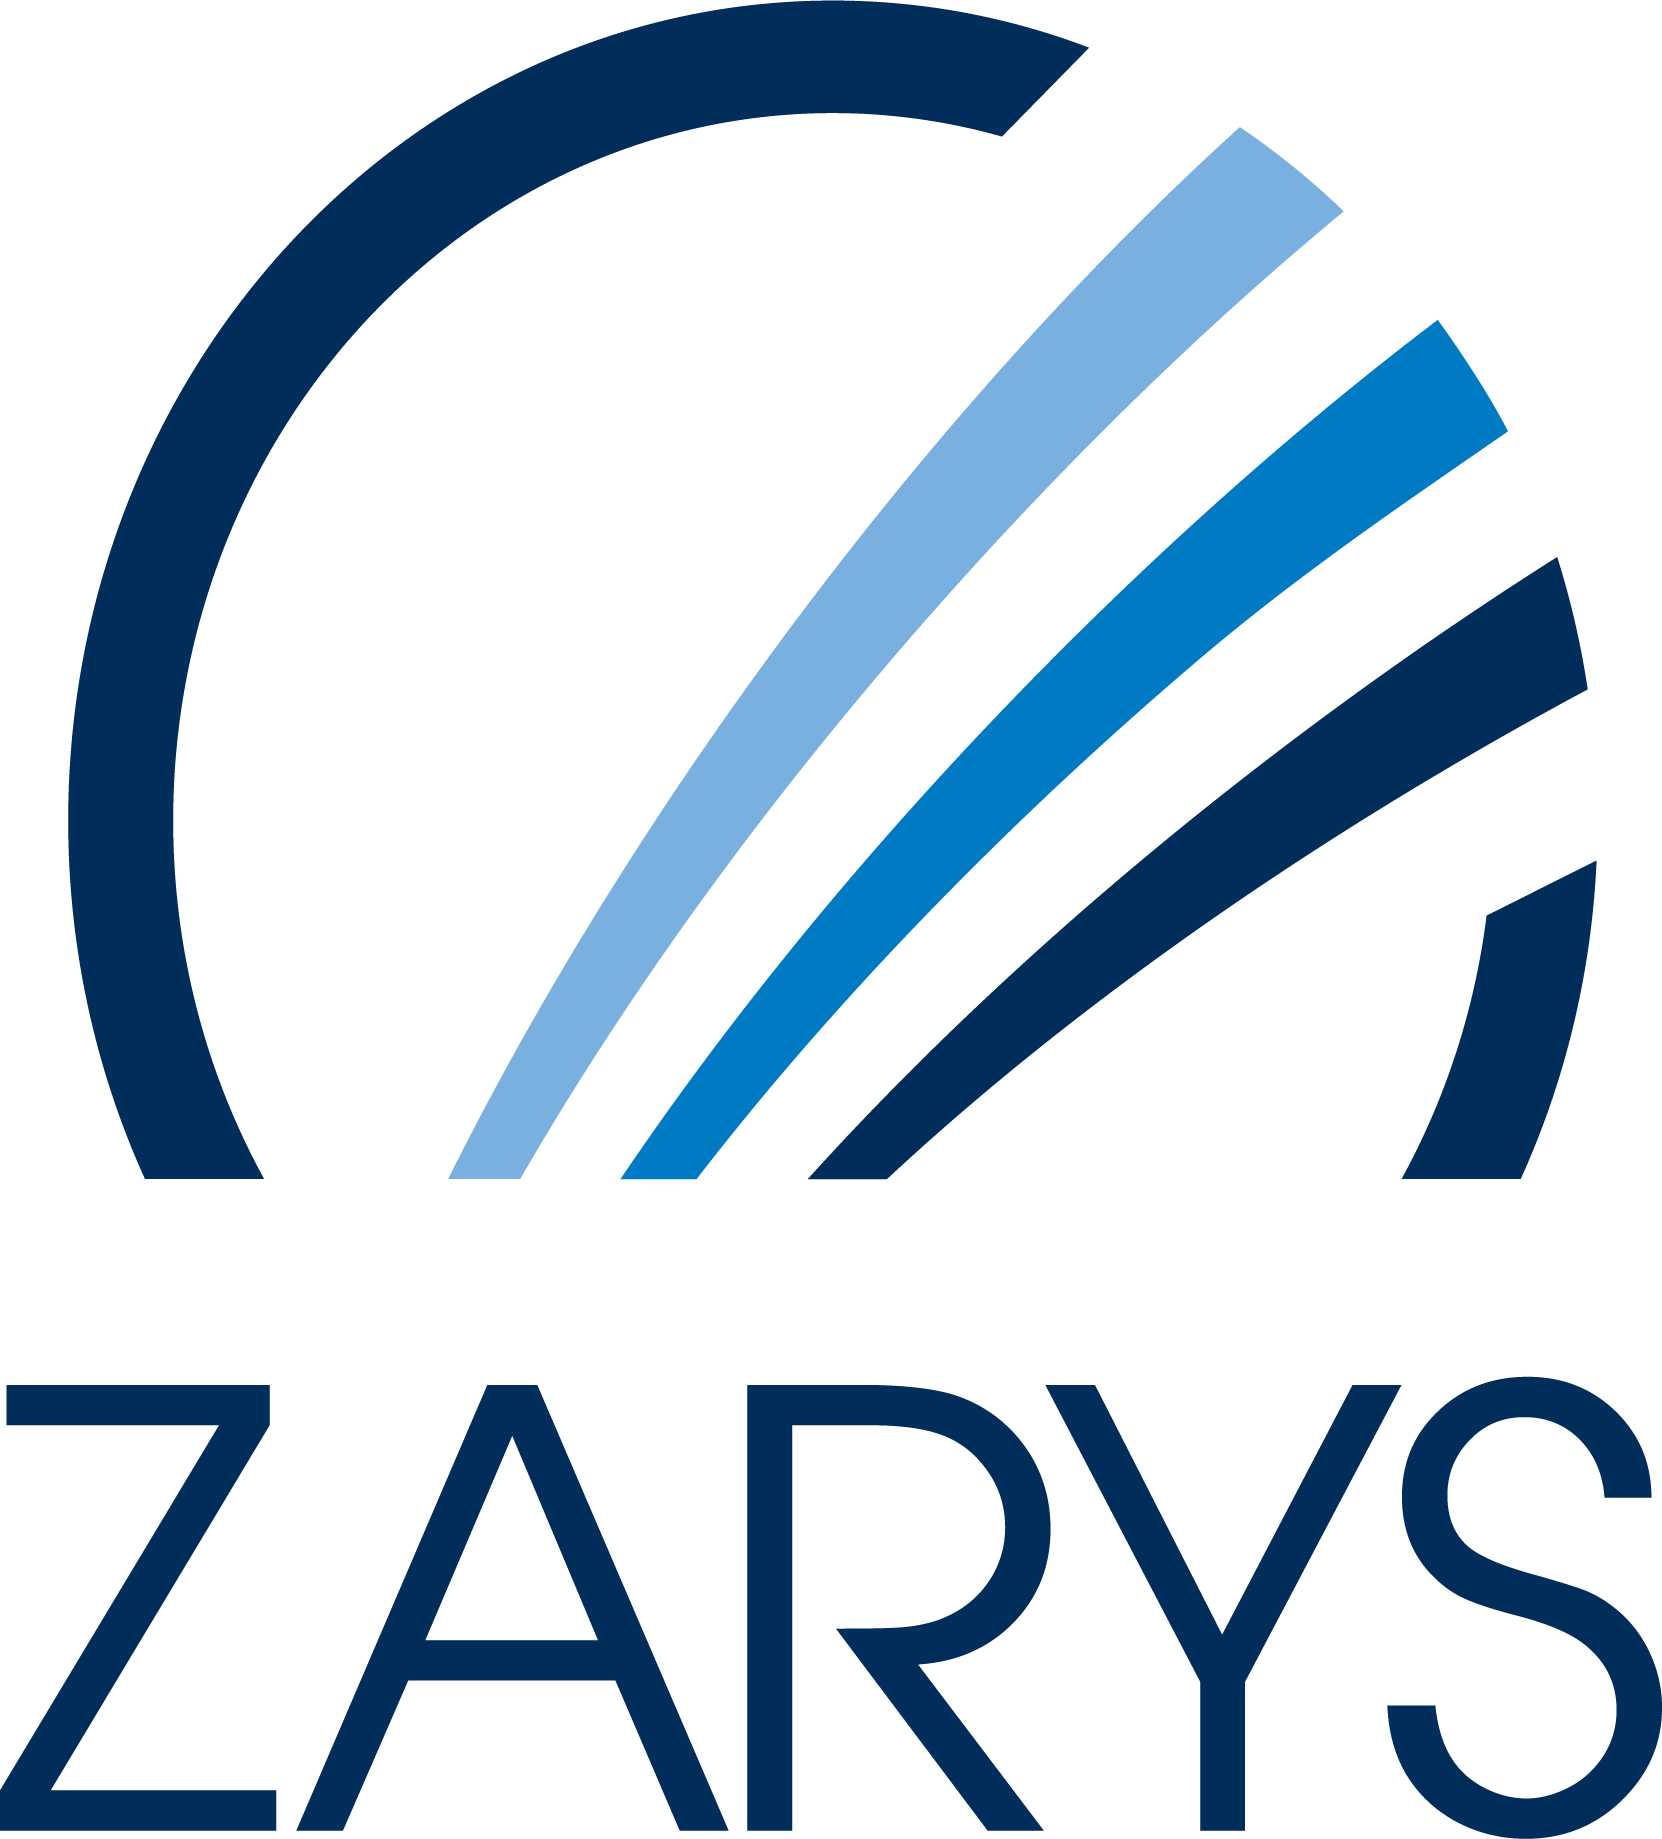 Logo Zarys